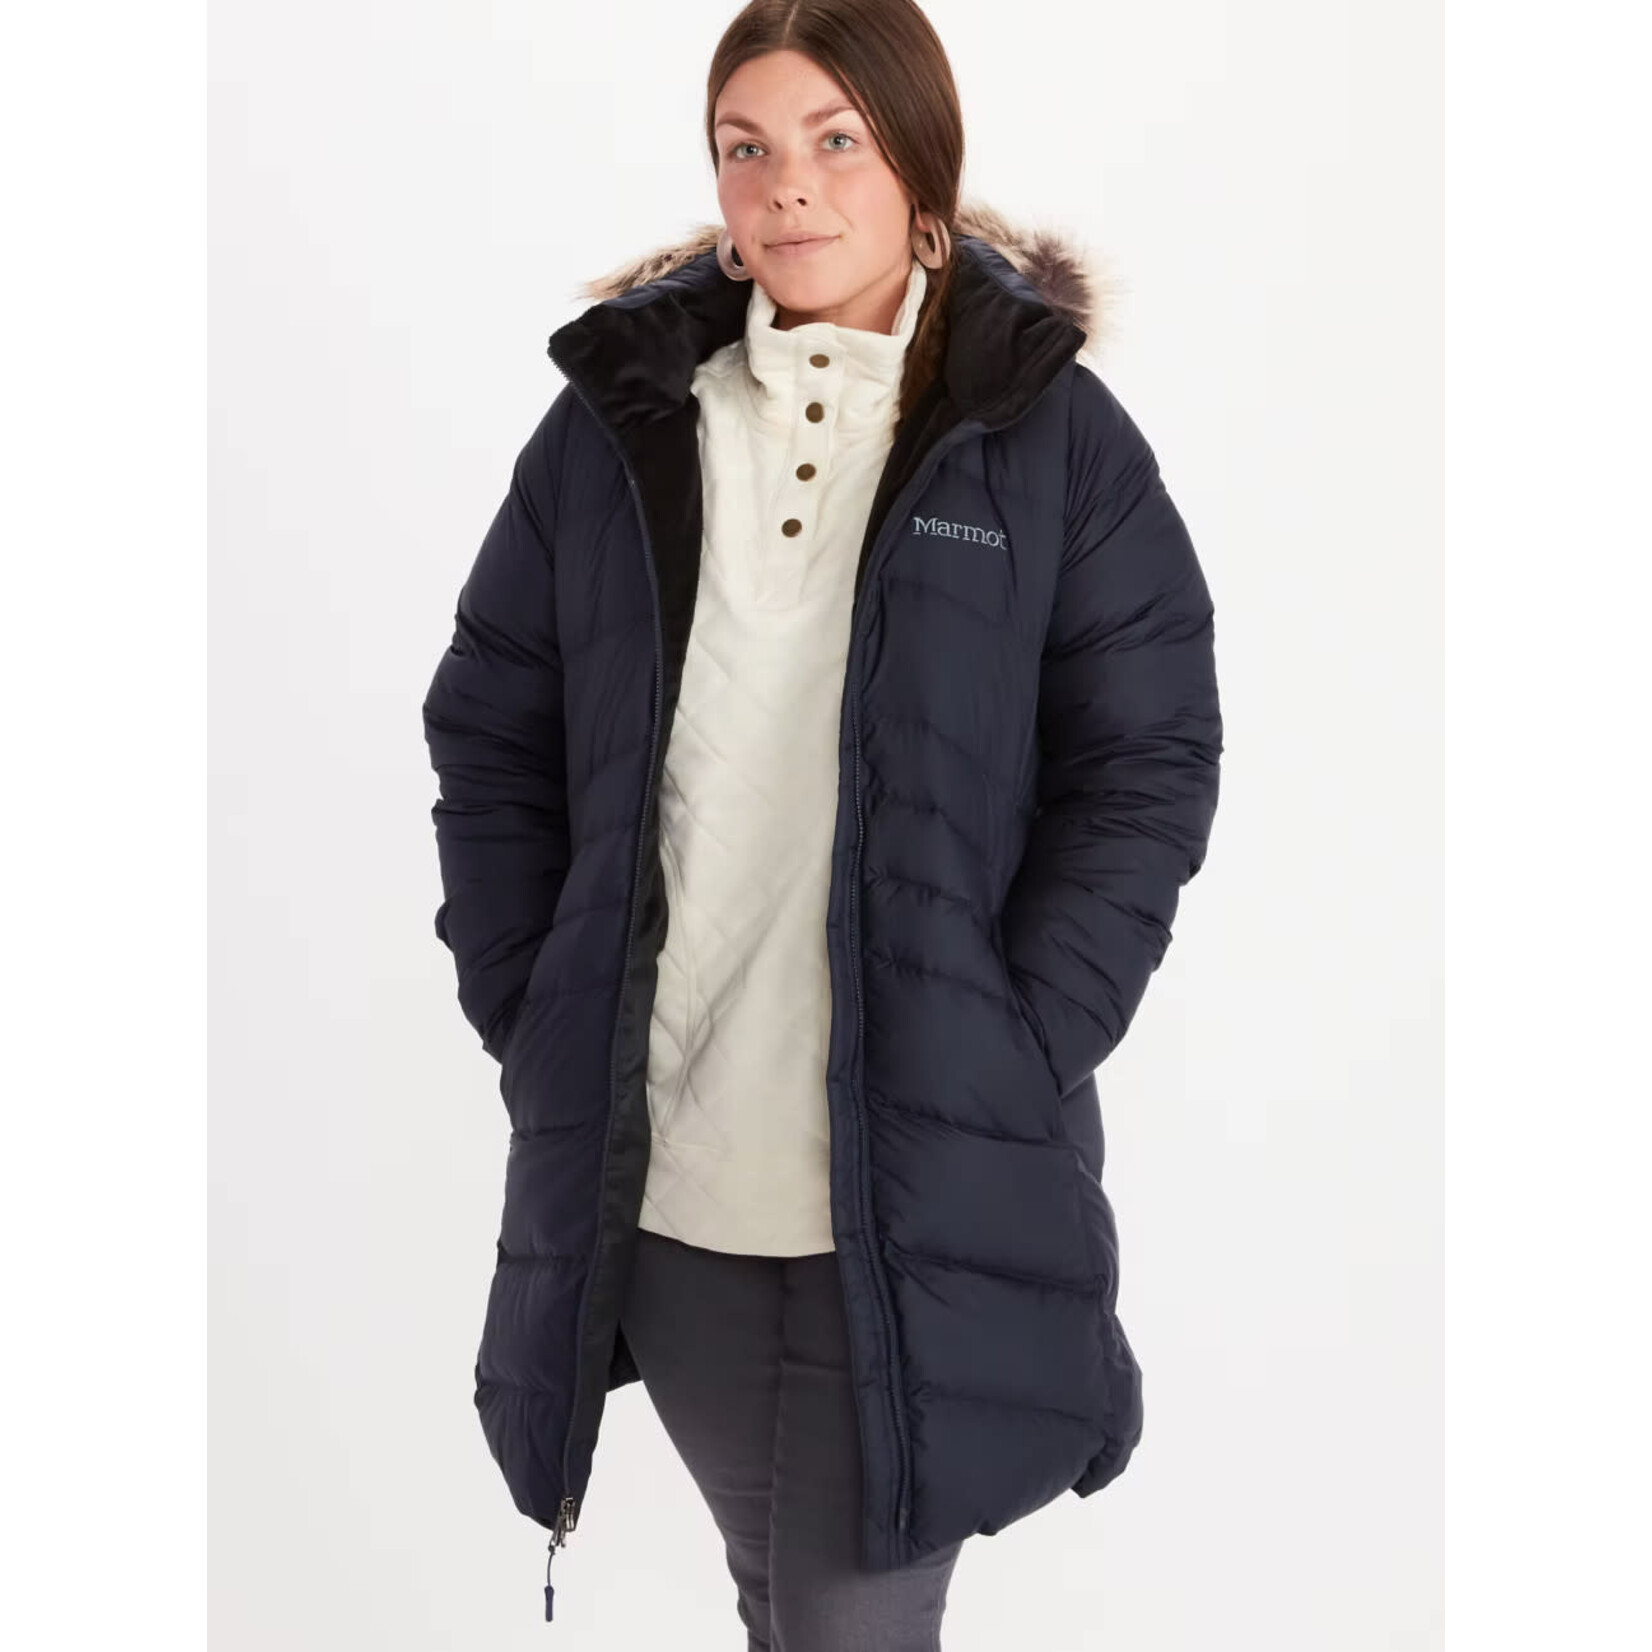 Marmot Wm's Montreal Coat (Manteau pour femme)